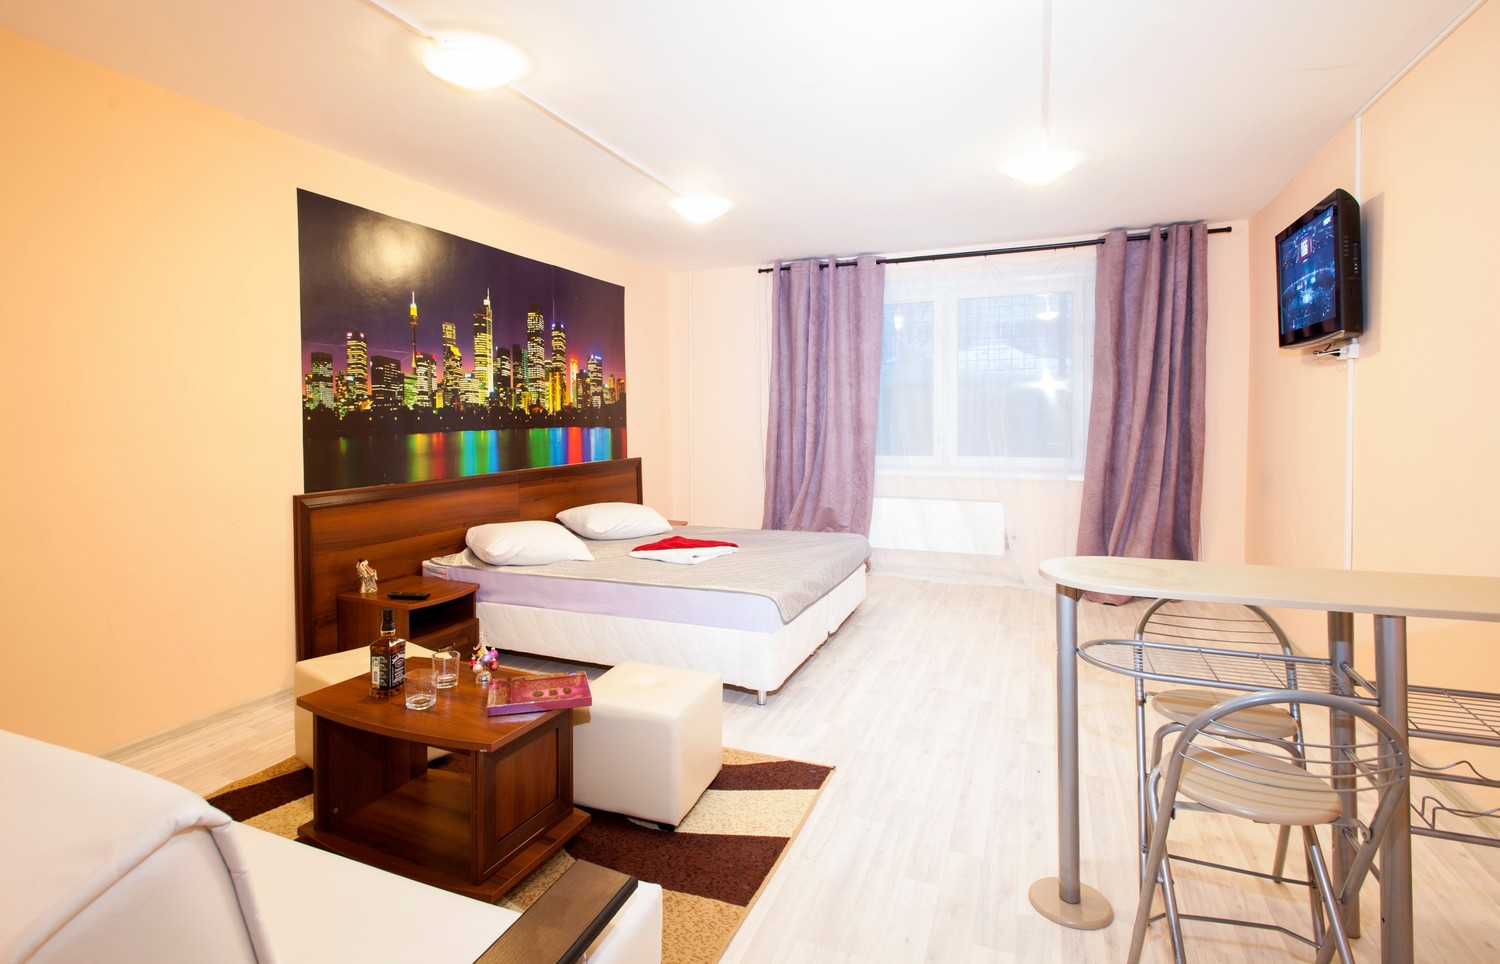 Отель «Долгопрудный-Сити» предлагает уютные, комфортабельные номера со всем необходимым для проживания